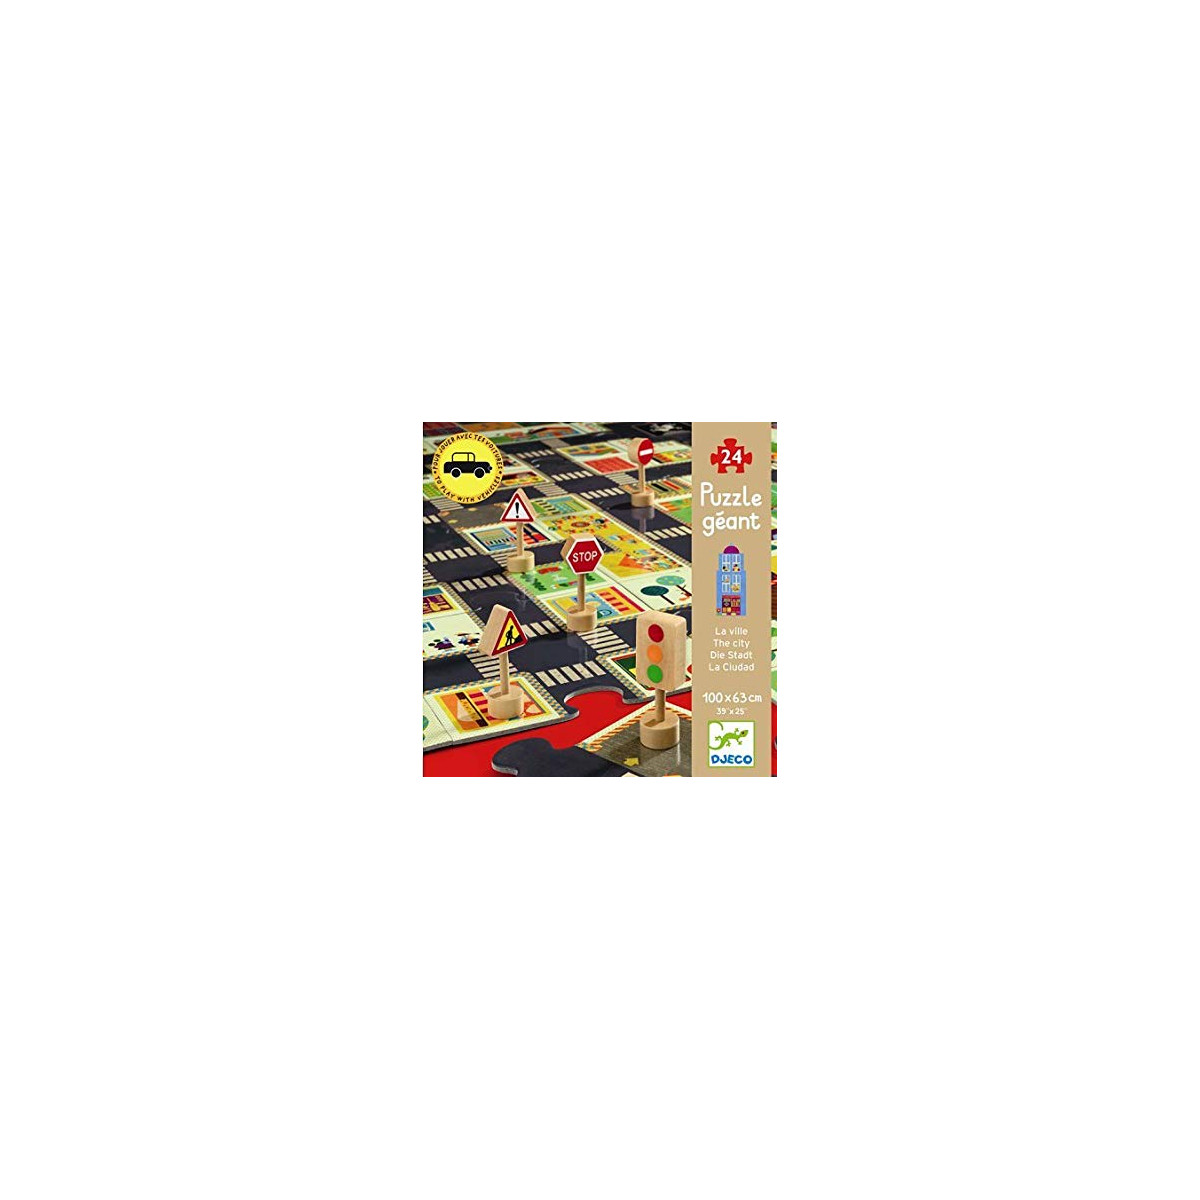 Puzzle géant - les couleurs 24 pcs - djéco - La Maison de Zazou